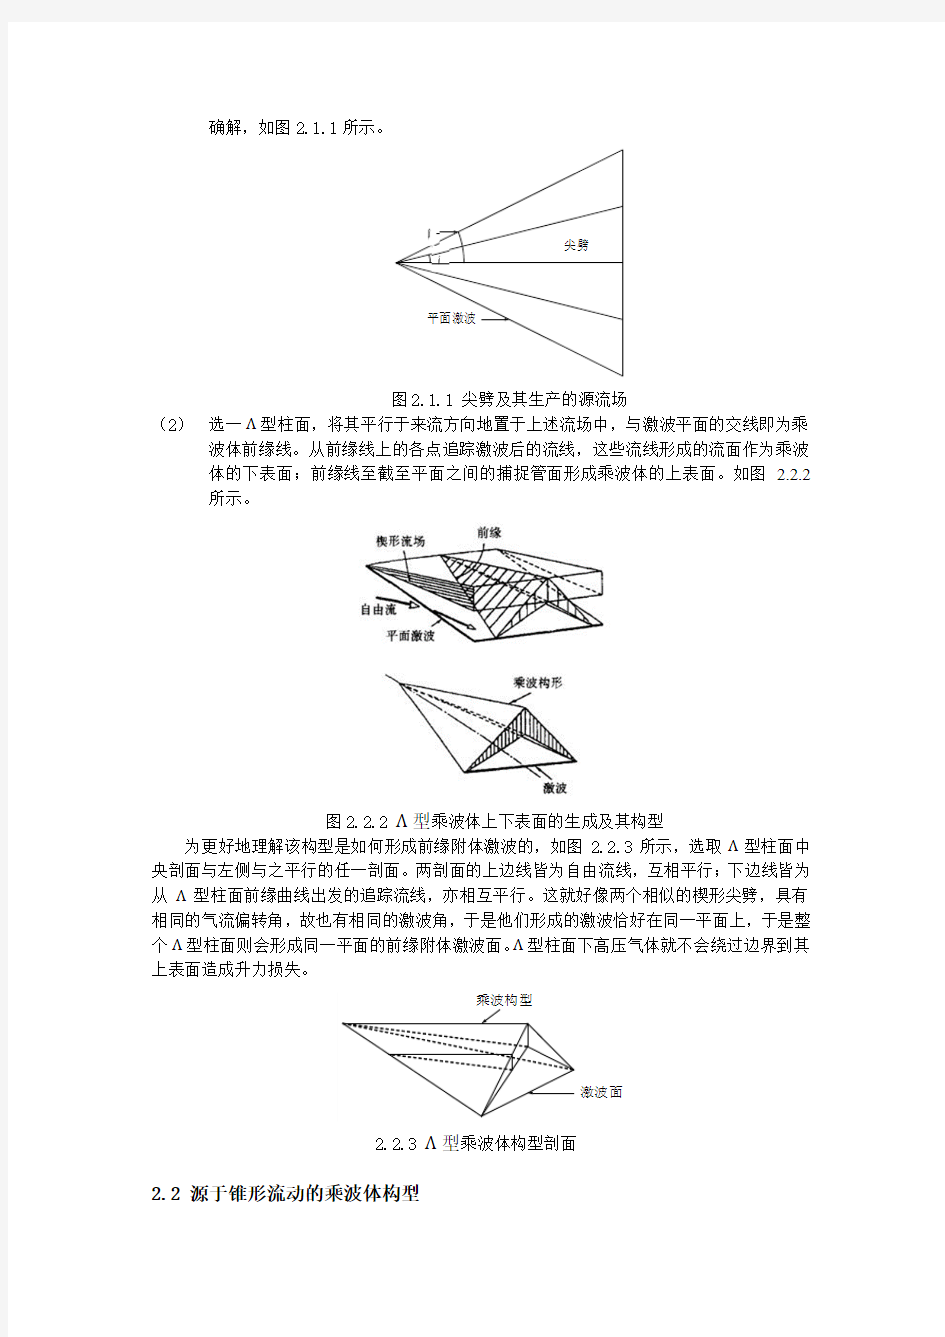 高超声速飞行器乘波体构型及其设计